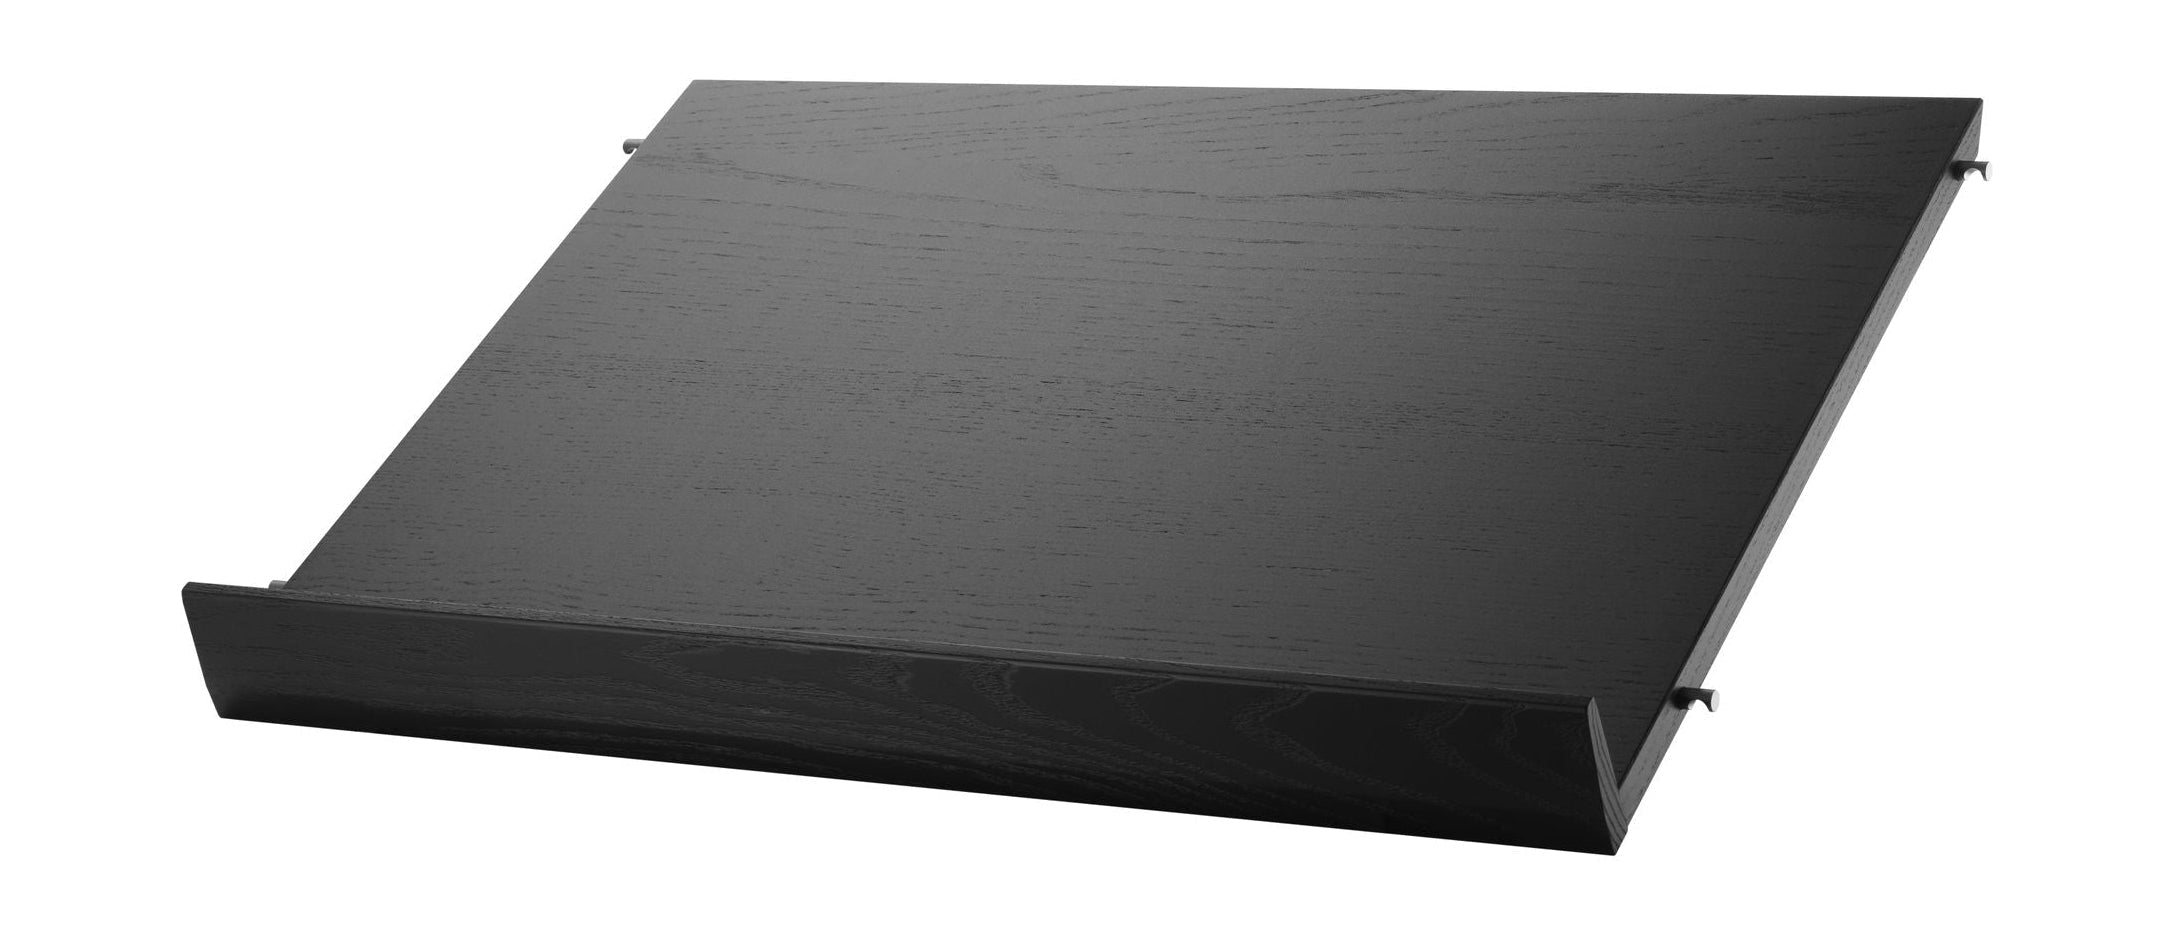 String Meubles Système de chaîne Magazine Bac Wood Black Taché Taché de cendres, 30x58 cm